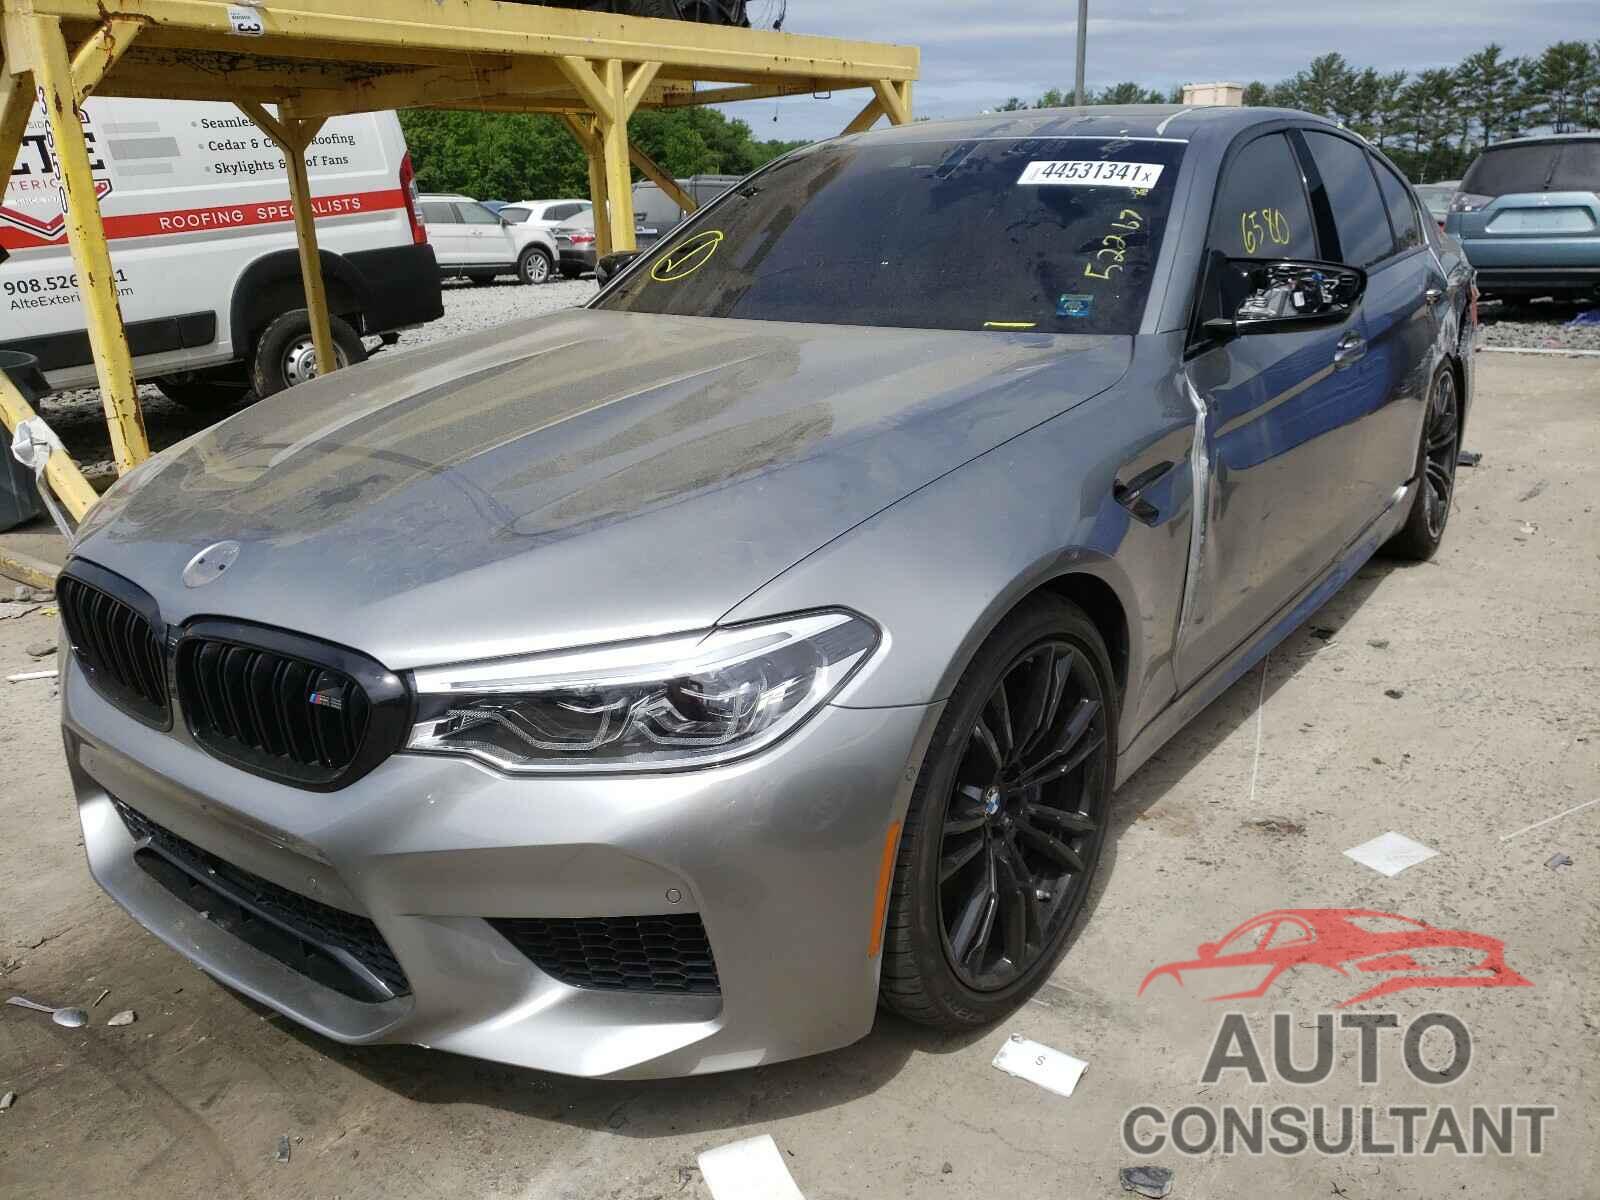 BMW M5 2019 - WBSJF0C55KB448048